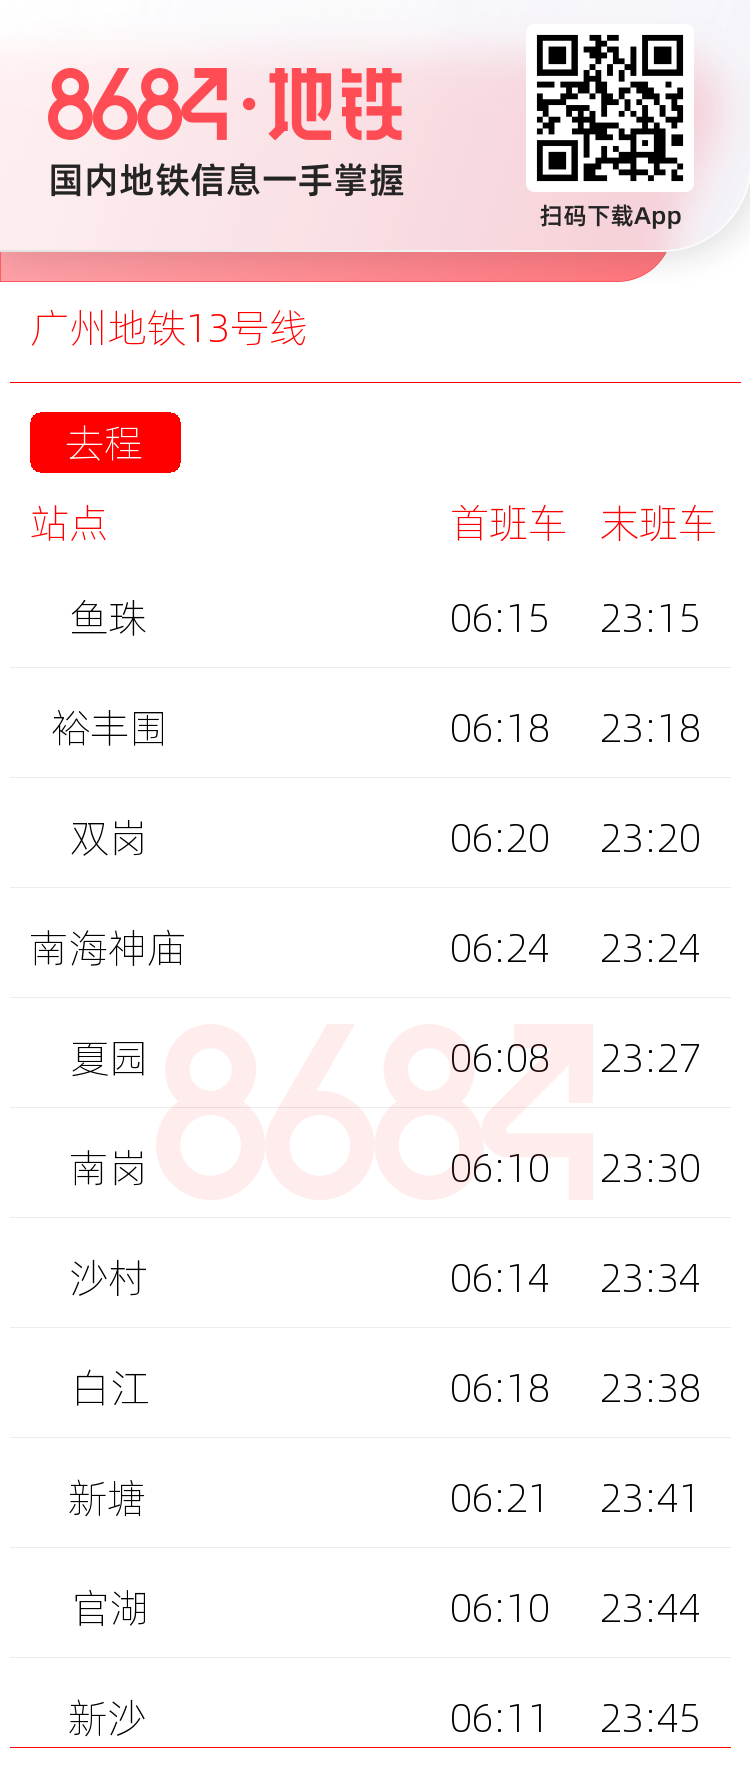 广州地铁13号线运营时间表